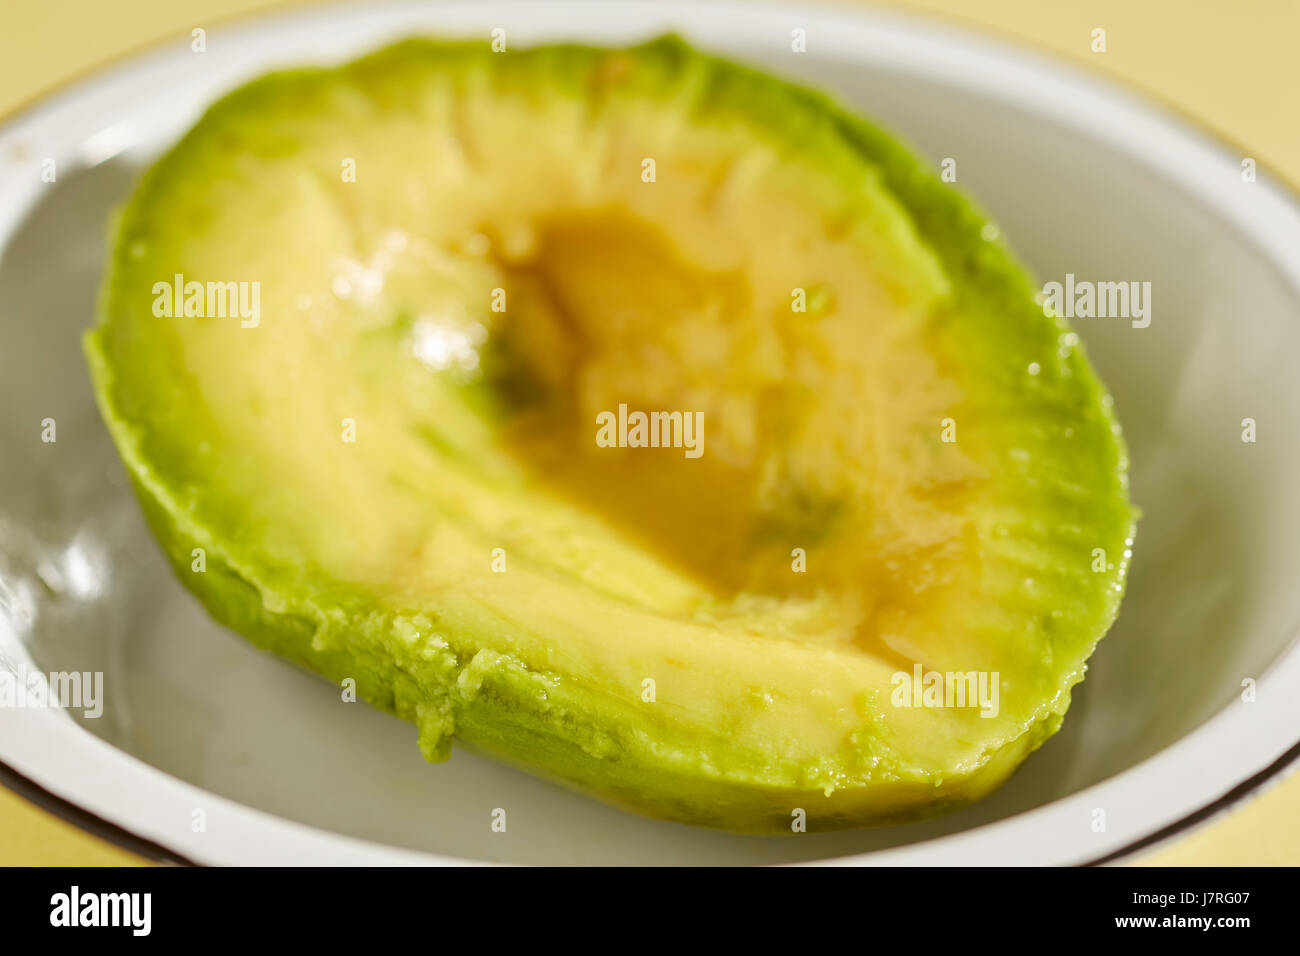 peeled avocado half Stock Photo